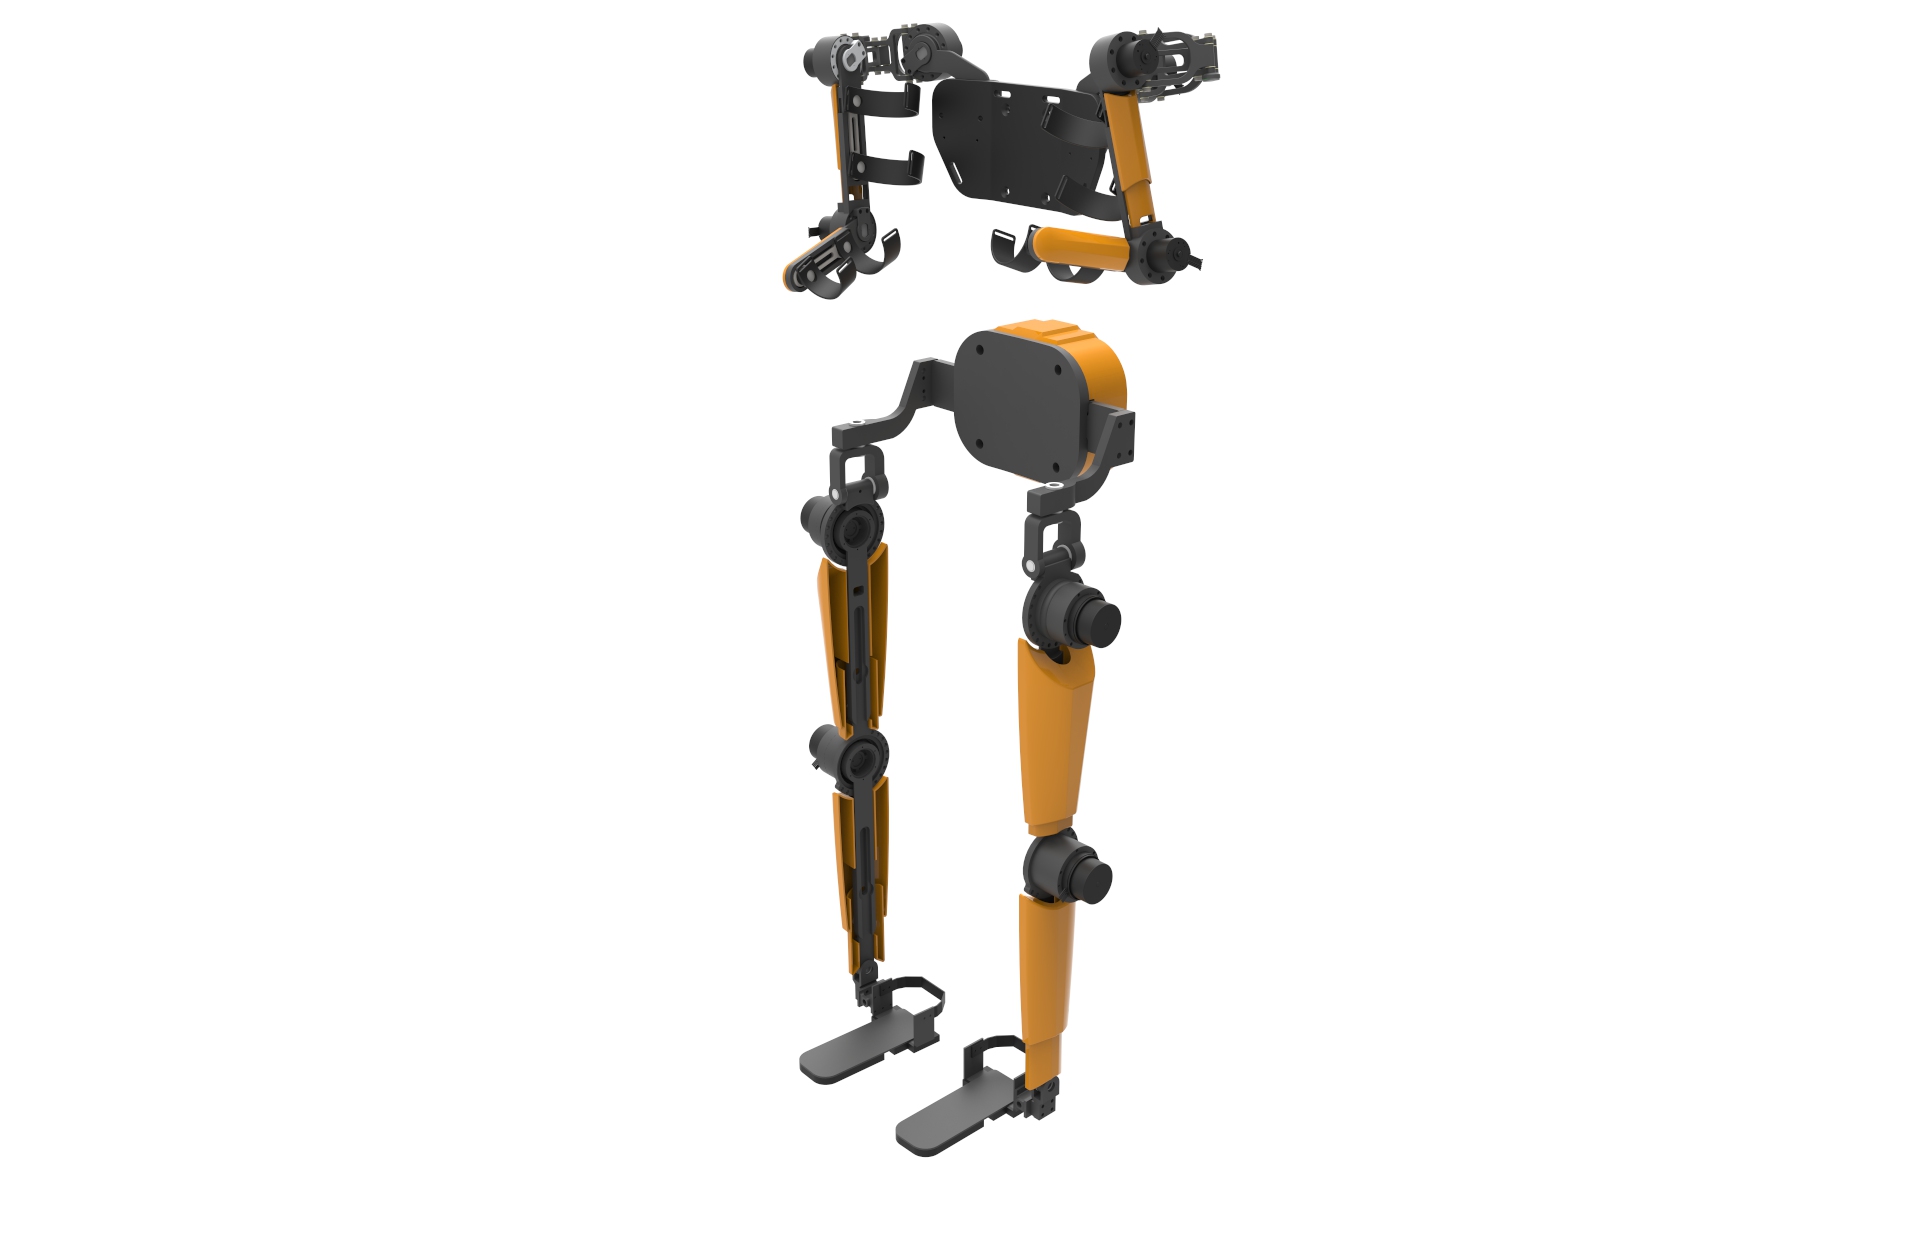 Axo Suit – Exoskeleton